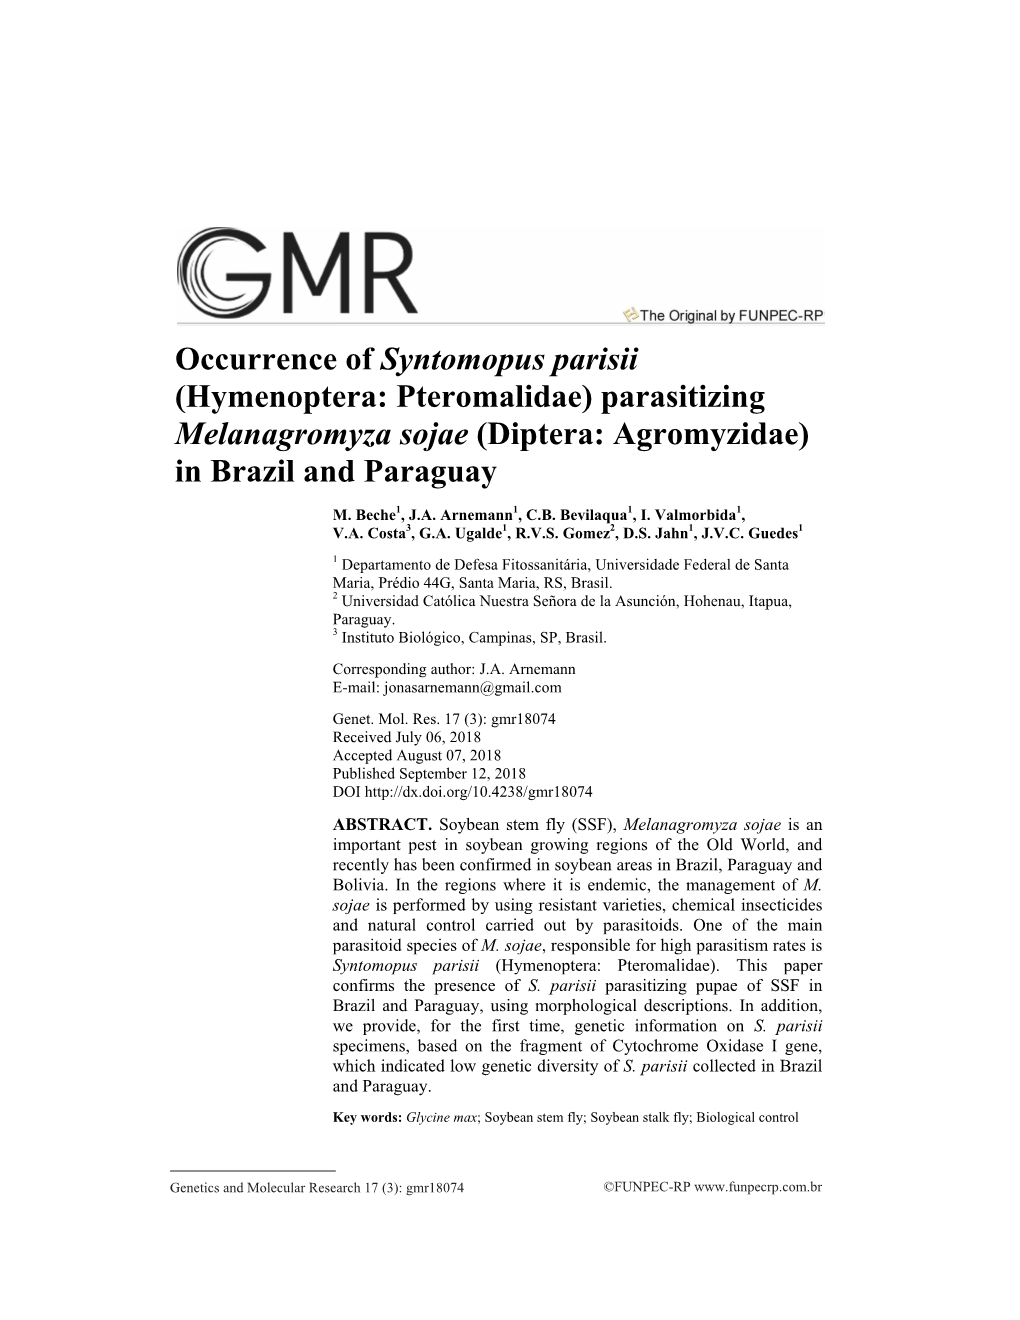 Occurrence of Syntomopus Parisii (Hymenoptera: Pteromalidae) Parasitizing Melanagromyza Sojae (Diptera: Agromyzidae) in Brazil and Paraguay